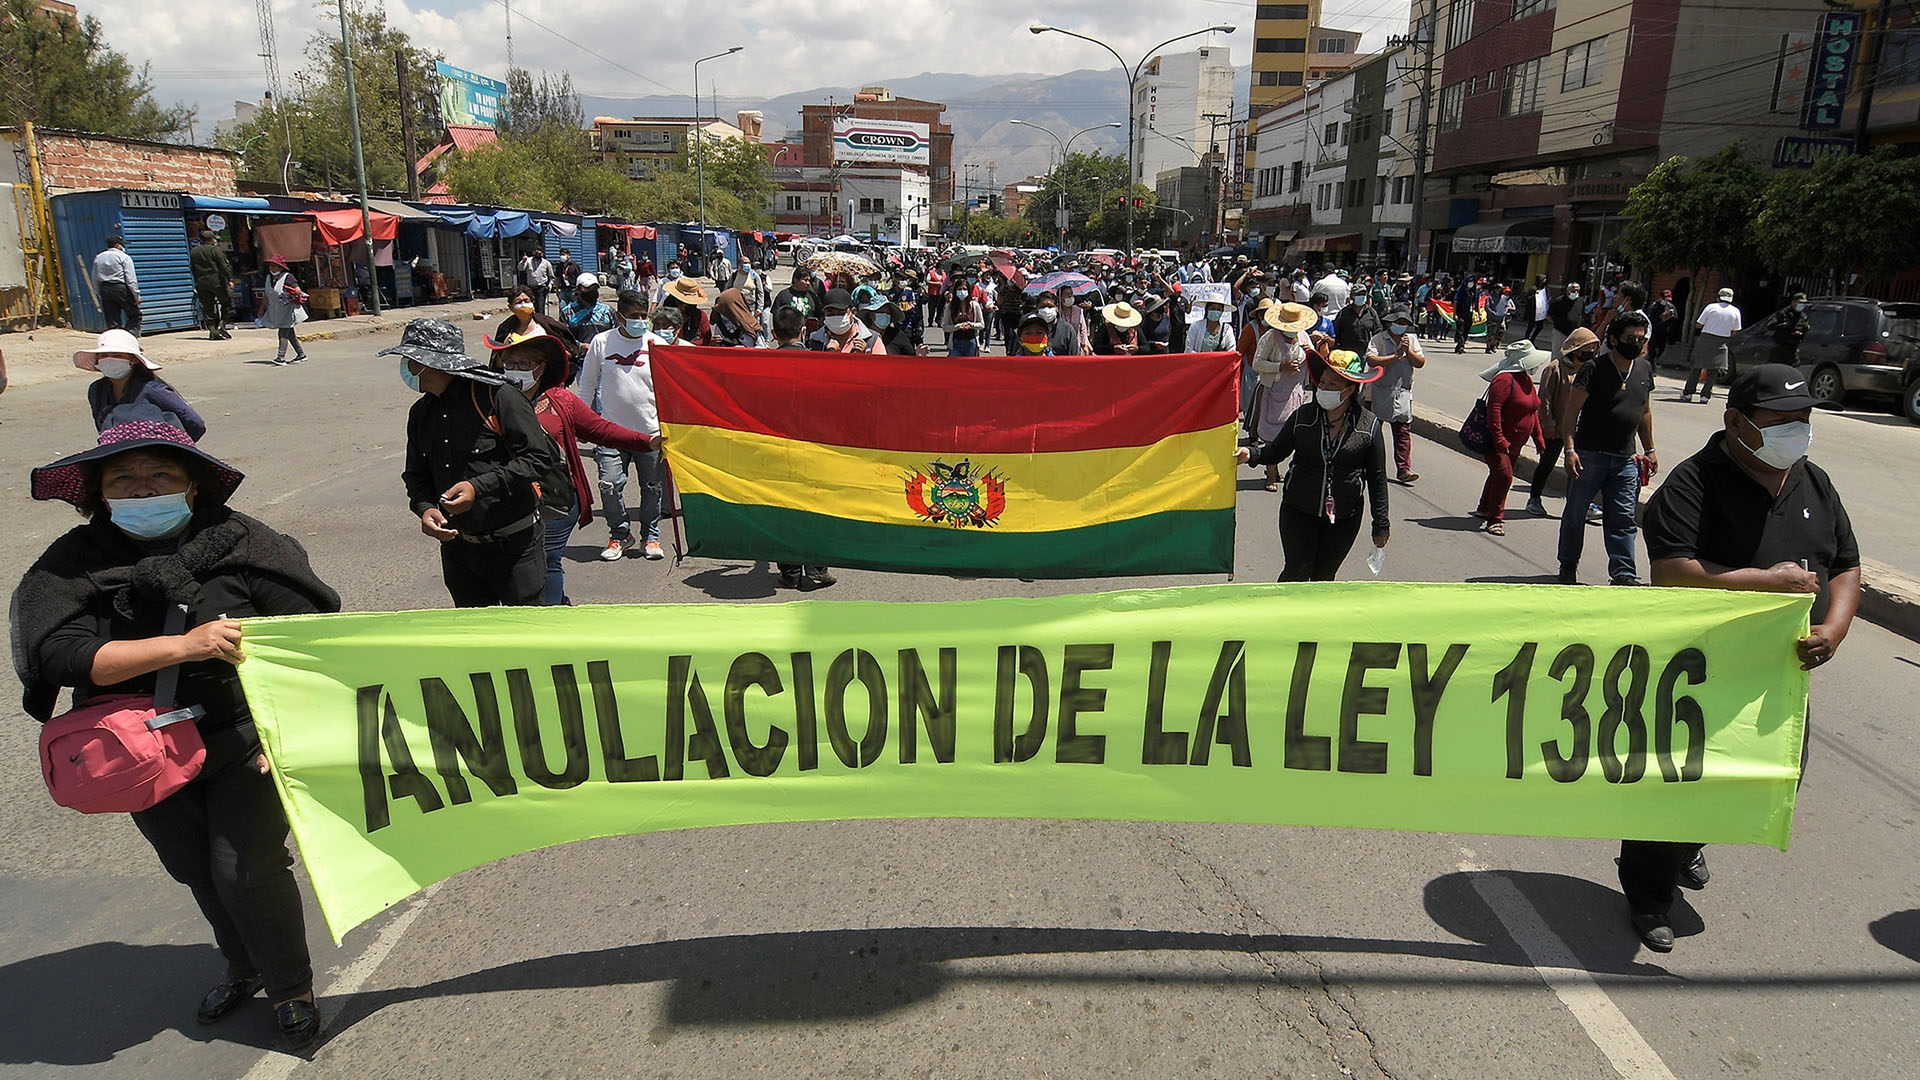 En una de las manifestaciones se muestra un cartel pidiendo que se derogue una ley (EFE/Jorge Abrego)